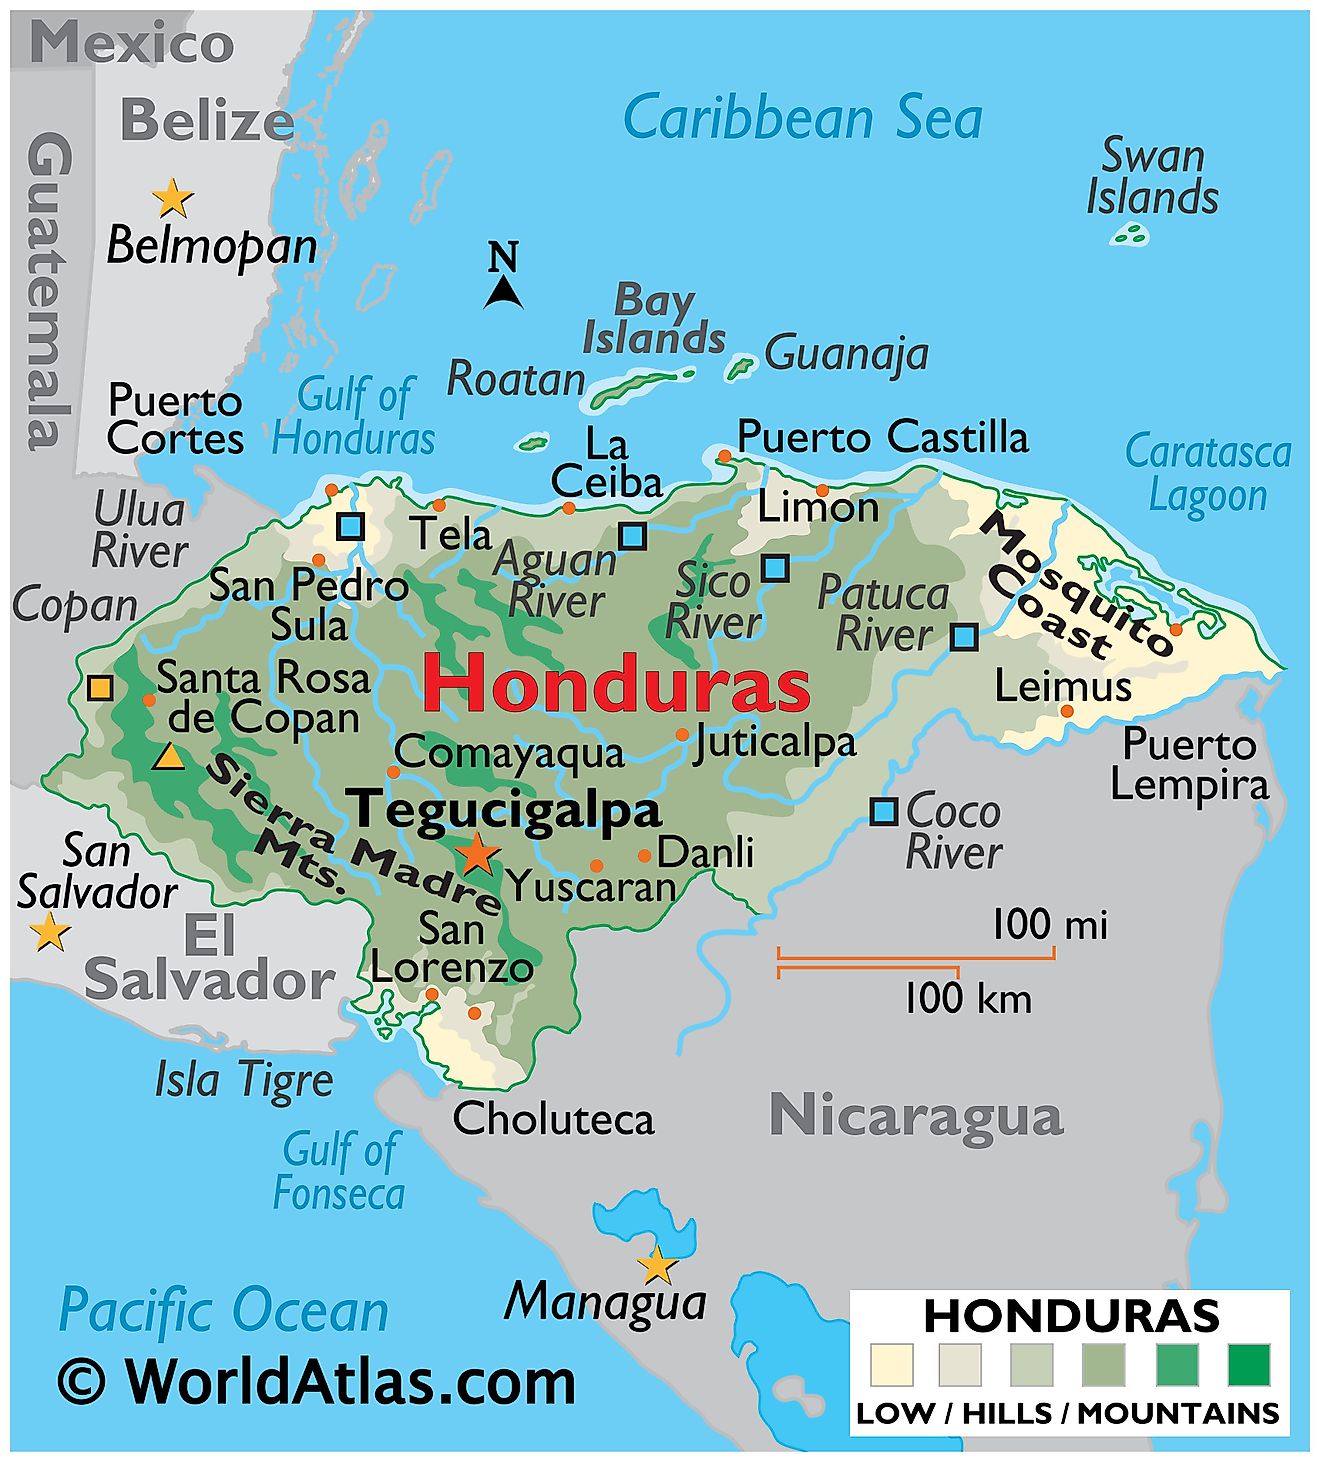 Mapa físico de Honduras que muestra el terreno, las montañas de la Sierra Madre, el punto más alto, la costa de los mosquitos, los ríos, las principales ciudades, las fronteras internacionales, etc.